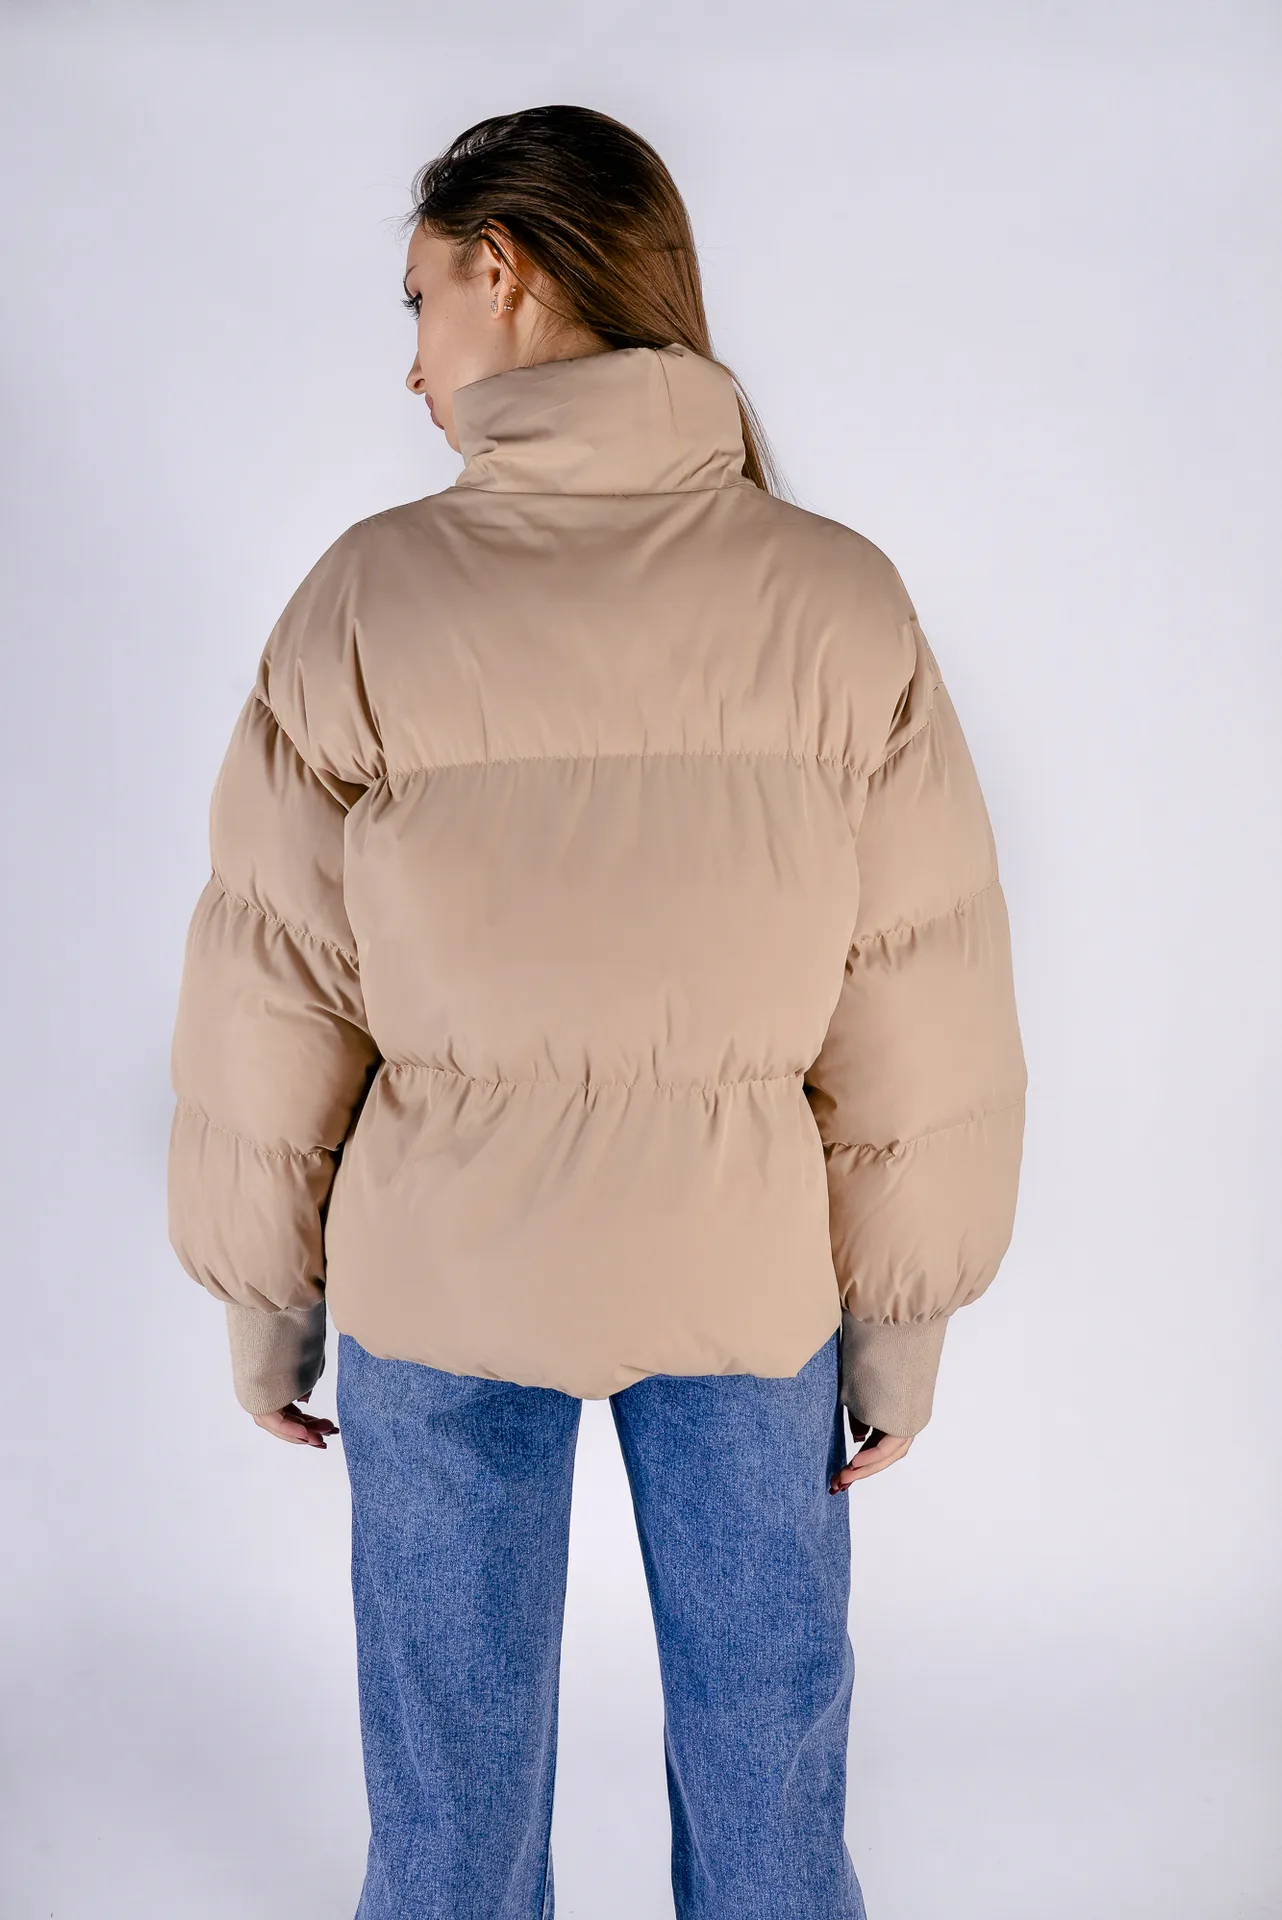 Бежевая куртка женская дутая купить